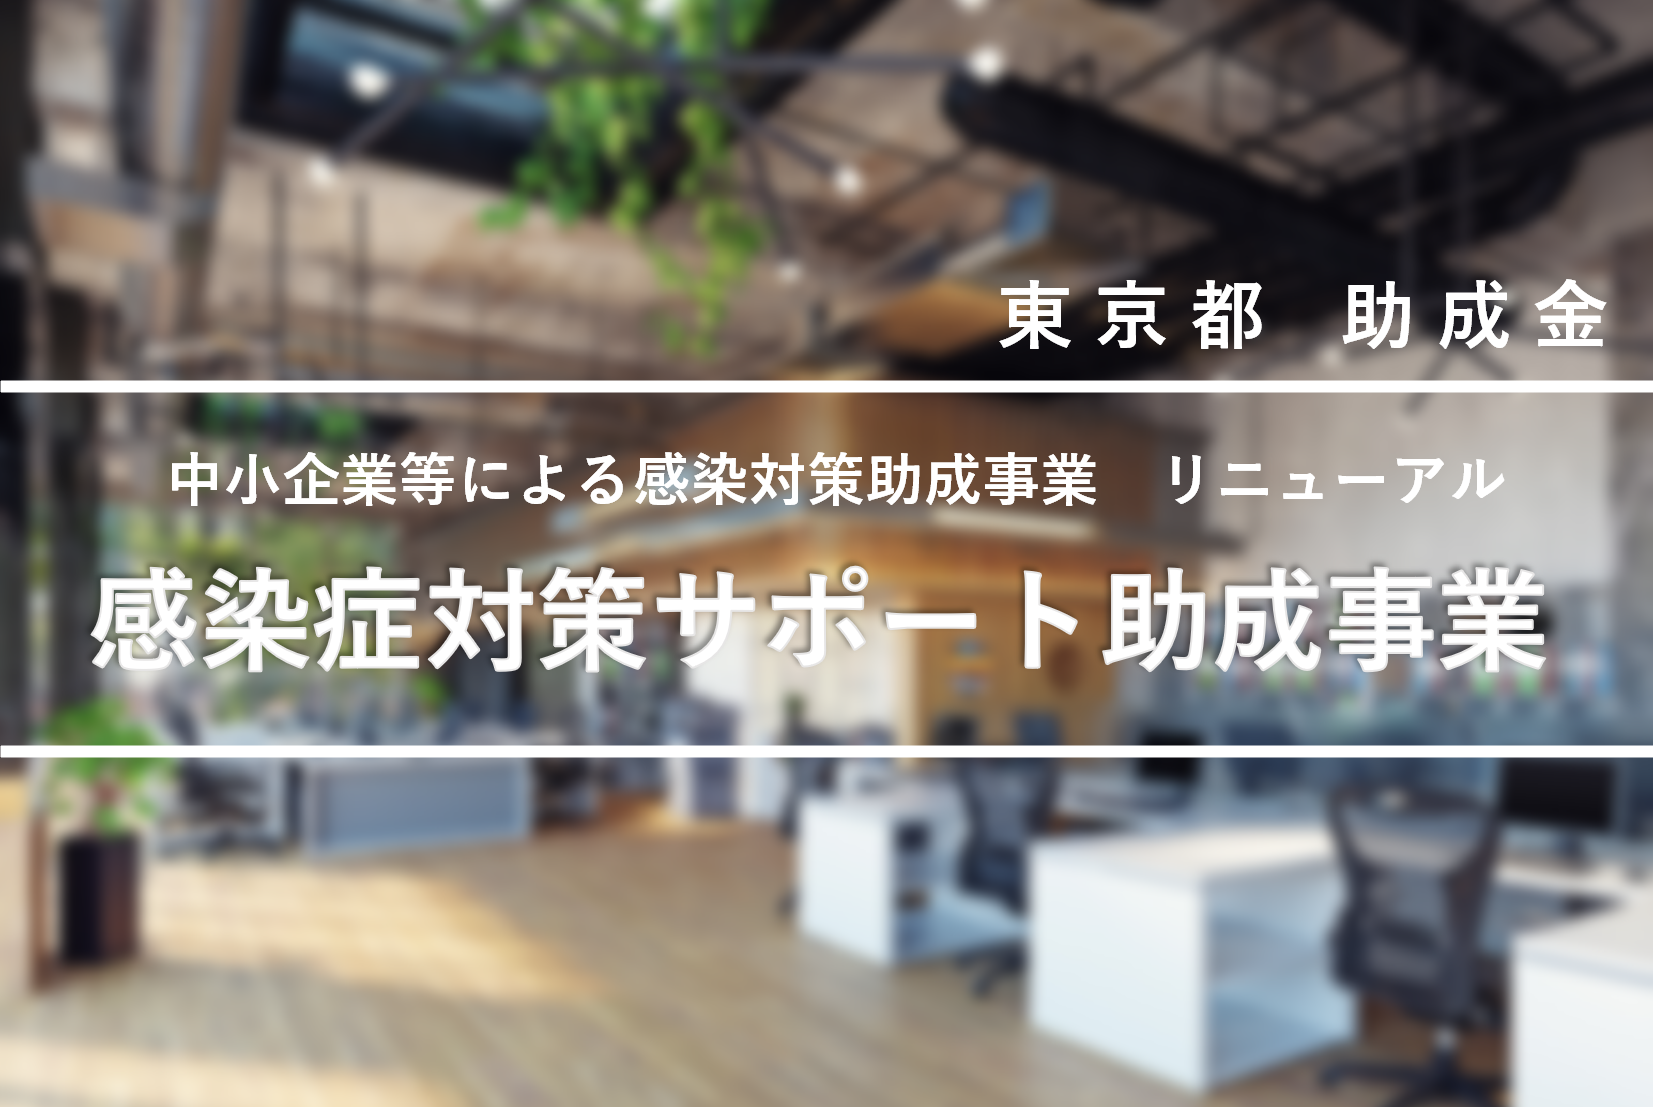 「【2023年東京都】中小企業等による感染症対策助成事業とは」を公開しました。